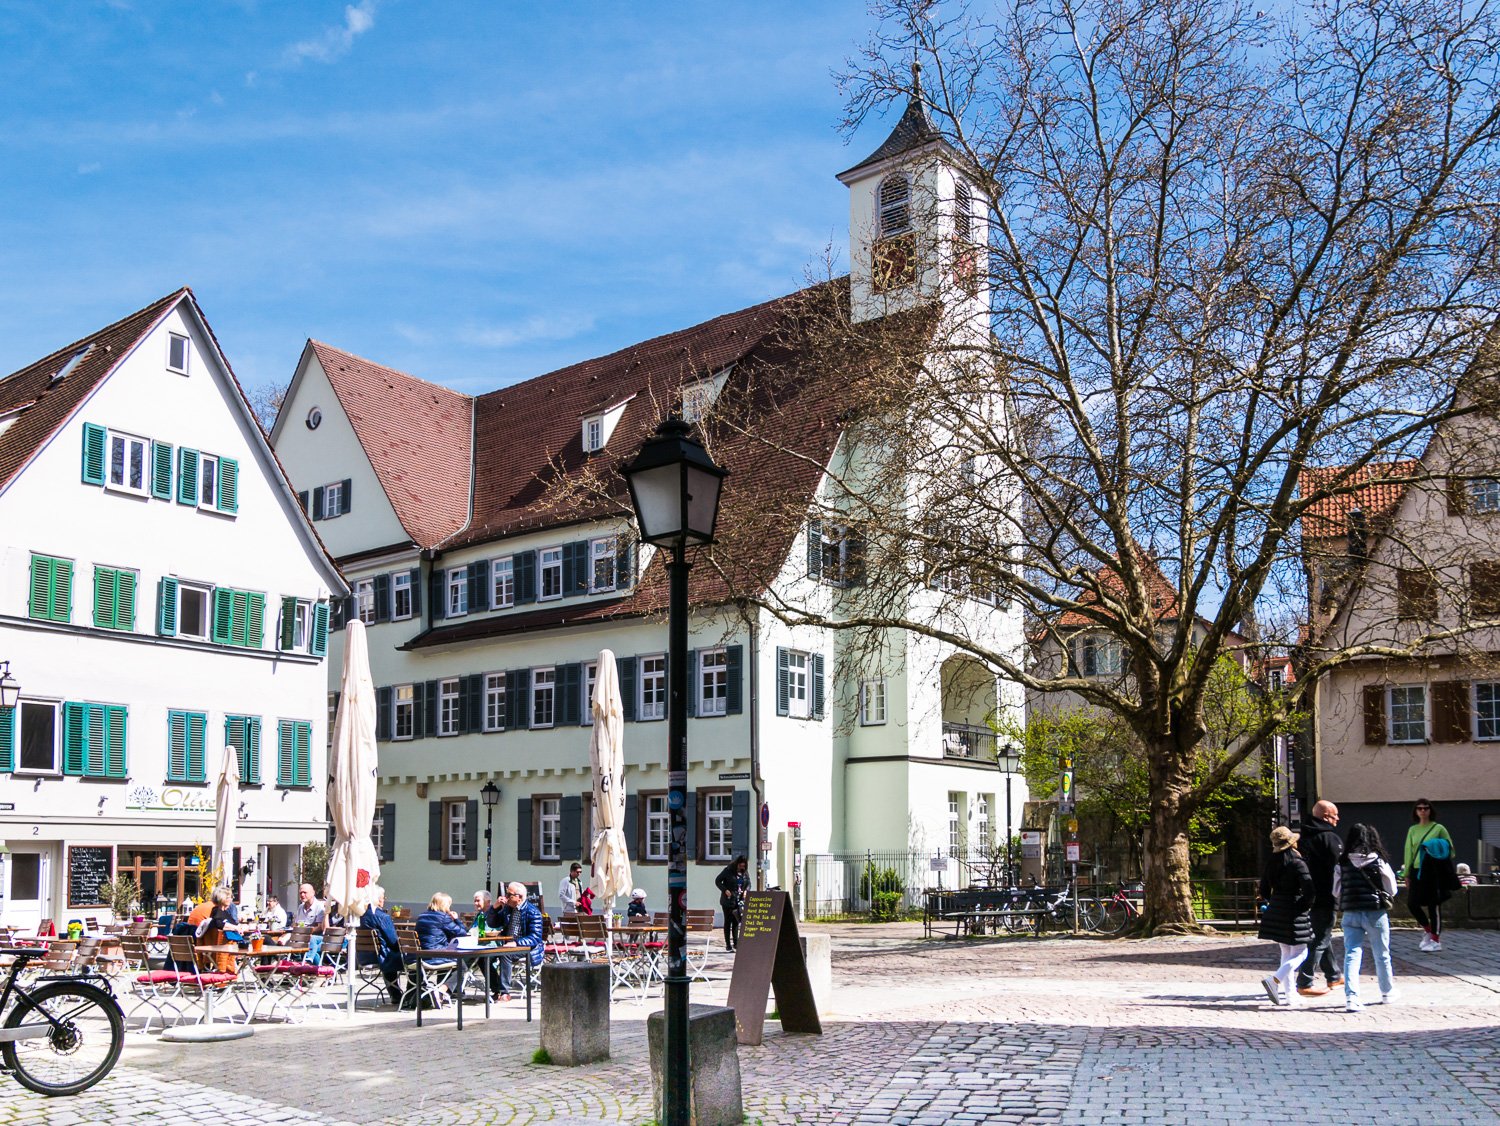 Blick auf das Glockentürmchen des Spitals Tübingen vor blauem Himmel